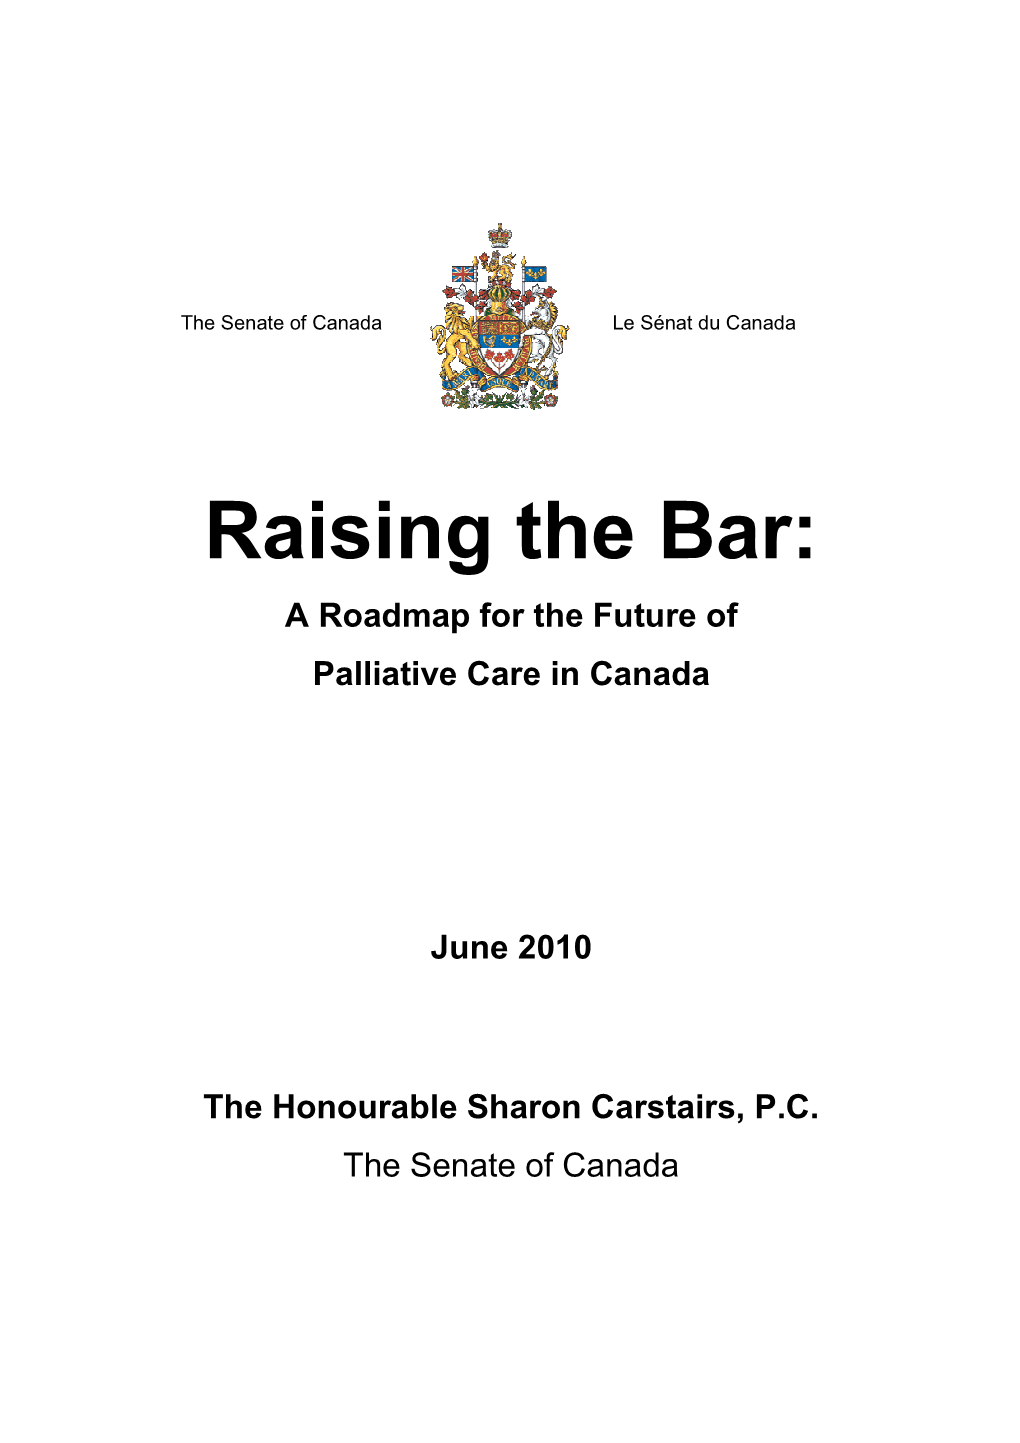 Raising the Bar June 2010